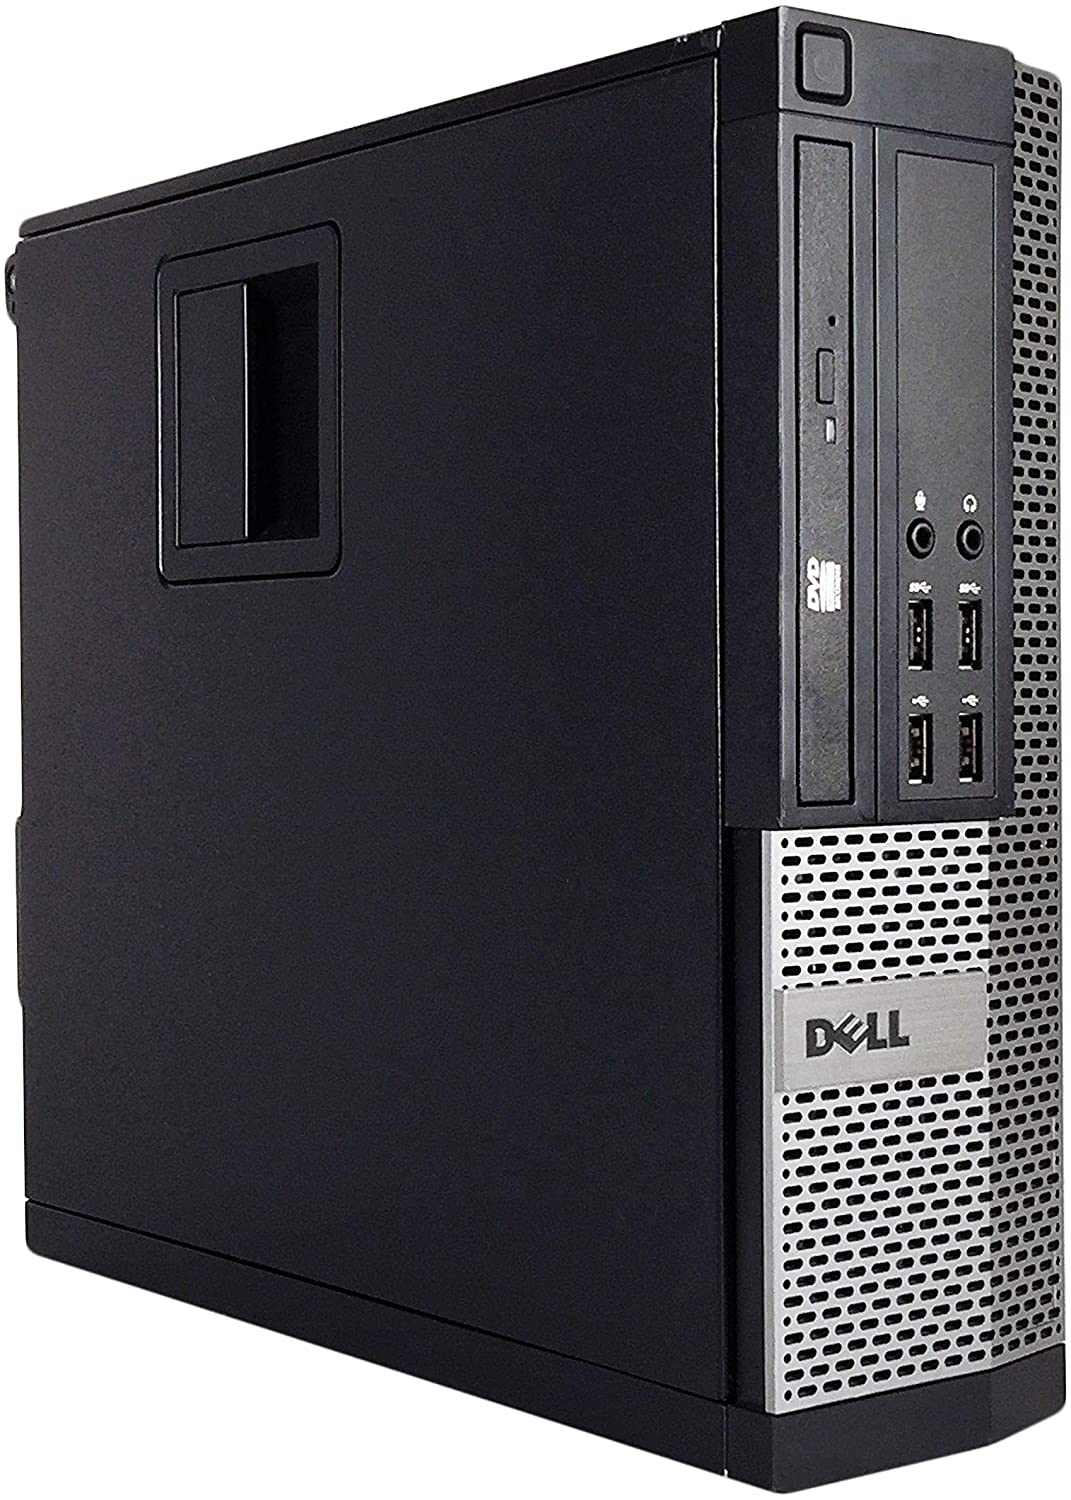 Dell 9020 SFF Business Desktop Mini Tower(Core i5-4770,8GB Ram,240GB SSD,WIFI,DVDRW)Win10Pro Renewed